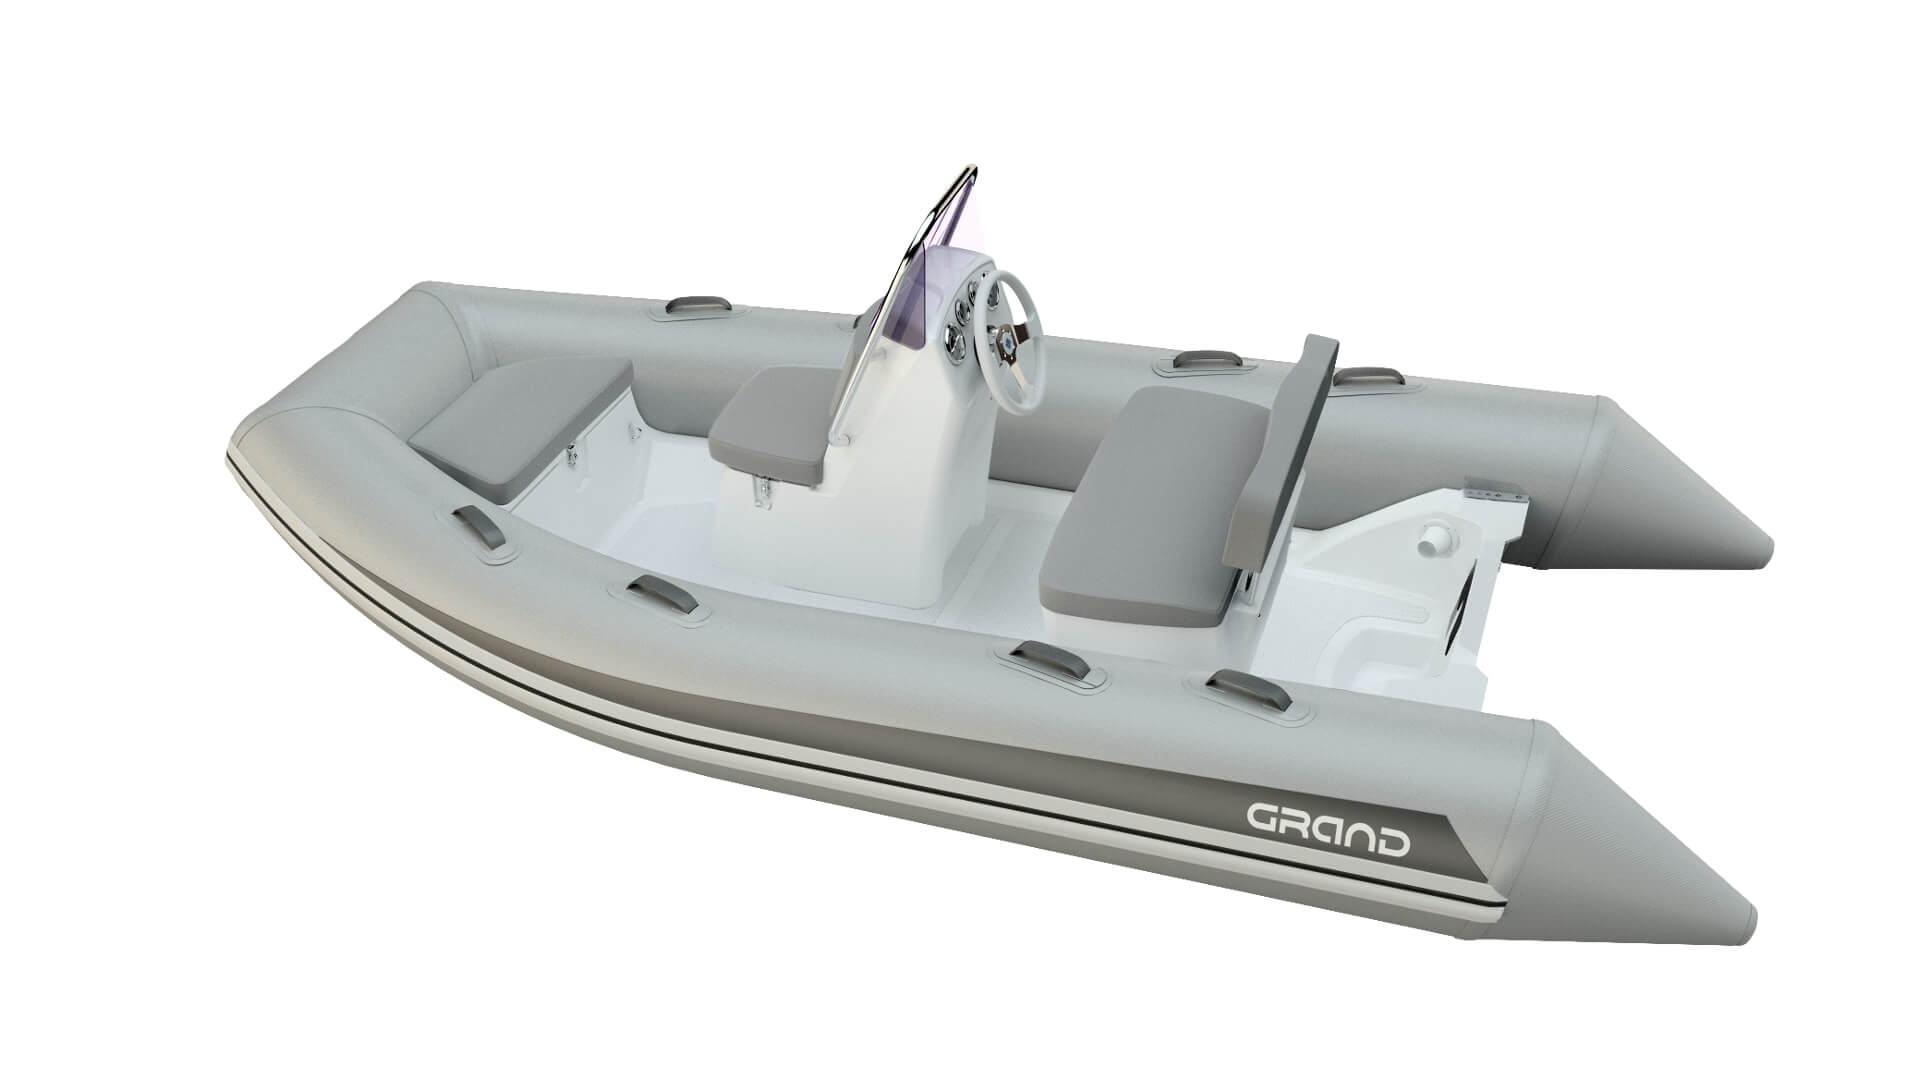 Надувная лодка GRAND Silver Line S370, GRAND Silver Line S370NL, GRAND Silver Line S370NLF, GRAND S370NL, GRAND S370NLF, S370NL, S370NLF, Надувная лодка GRAND, Надувная лодка ГРАНД, Надувная лодка с жестким дном, RIB, Rigid Inflatable Boats